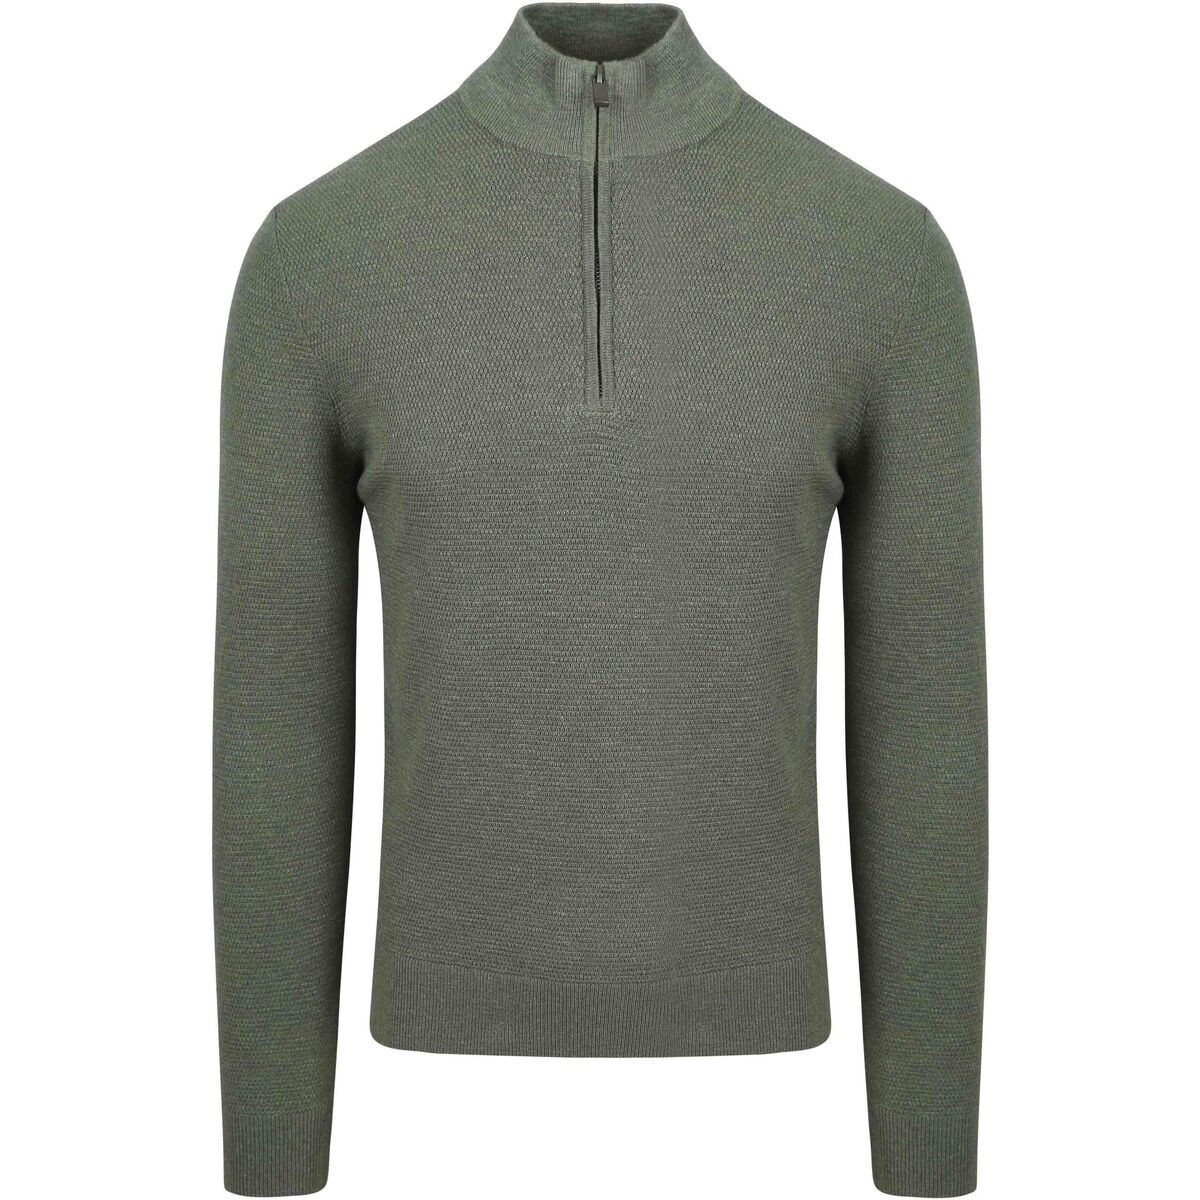 Textiel Heren Sweaters / Sweatshirts Suitable Half Zip Trui Structuur Groen Groen